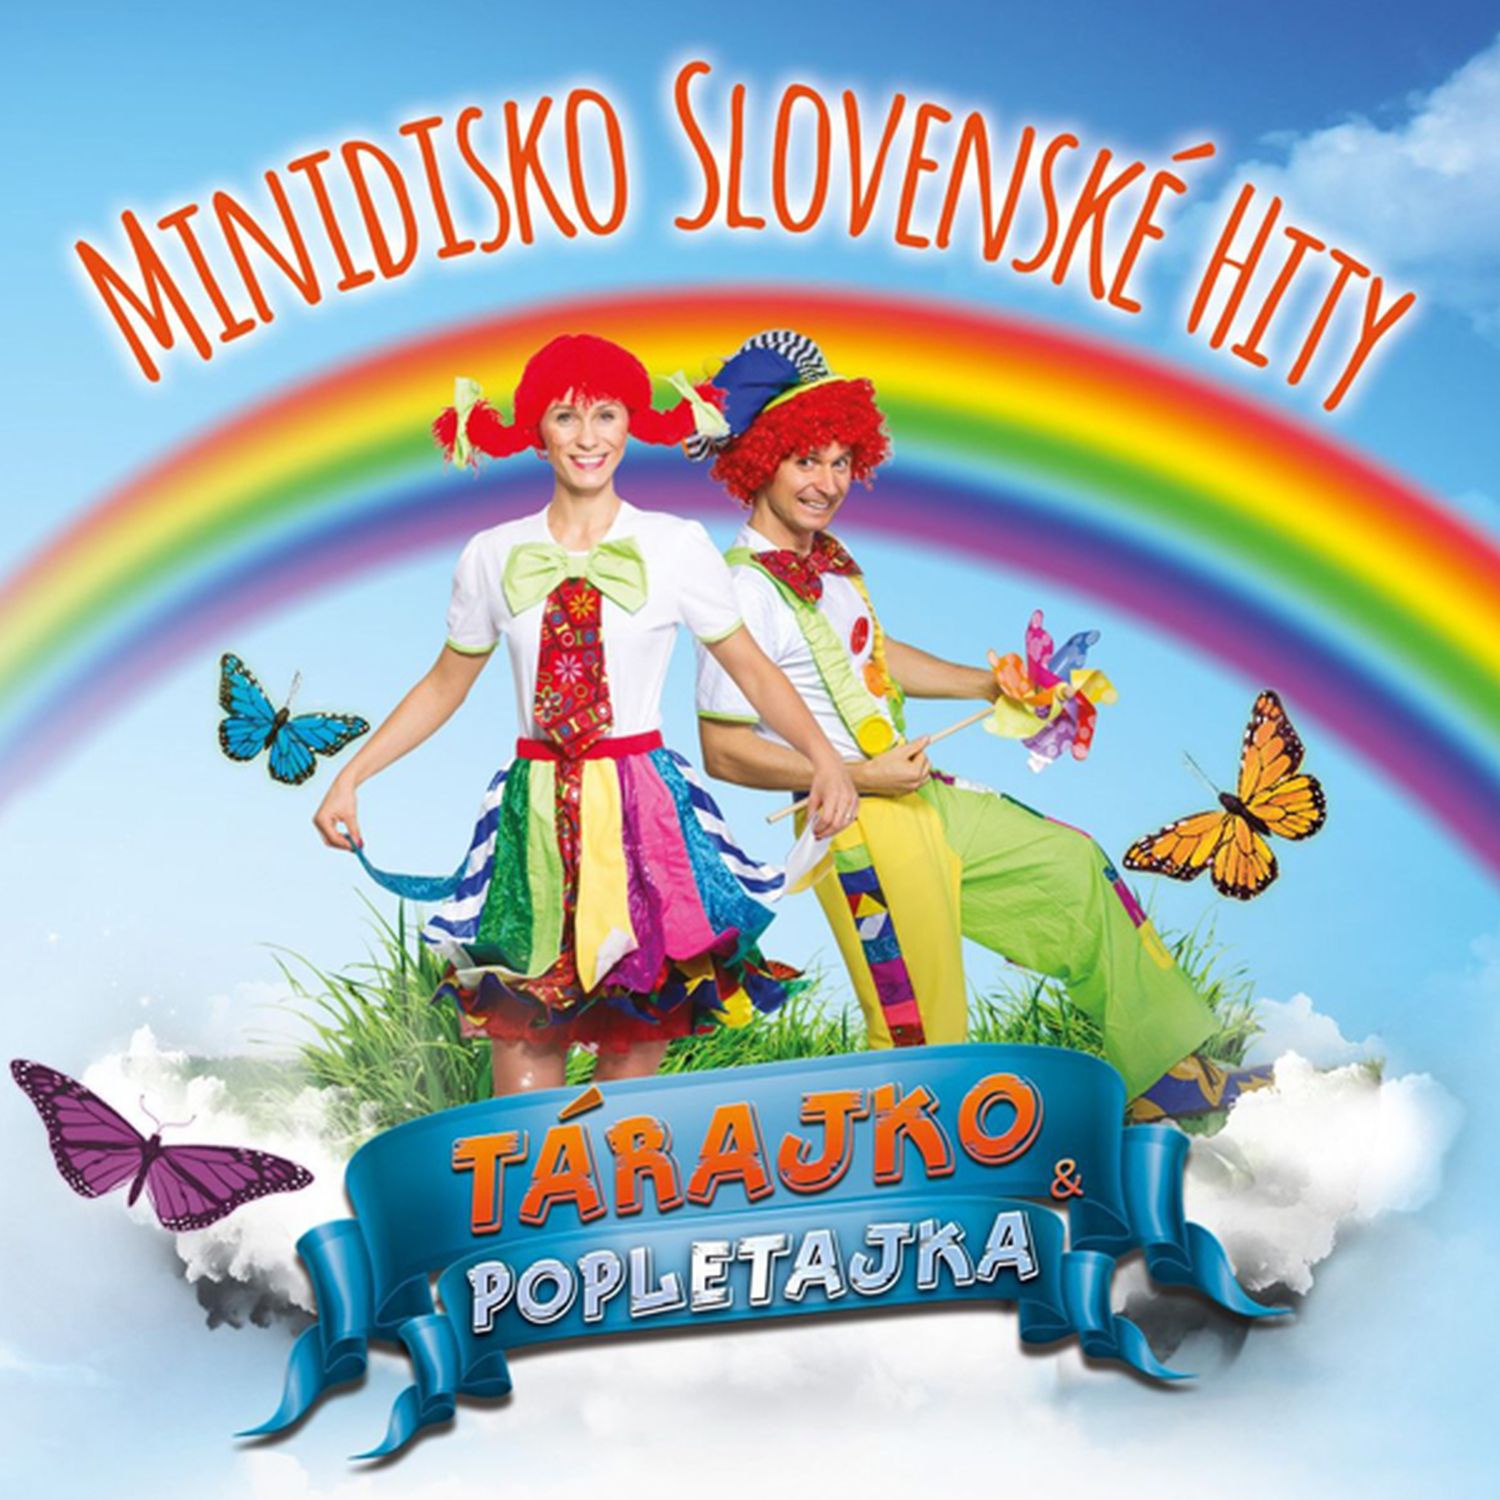 CD Shop - TARAJKO A POPLETAJKA MINIDISKO SLOVENSKE HITY